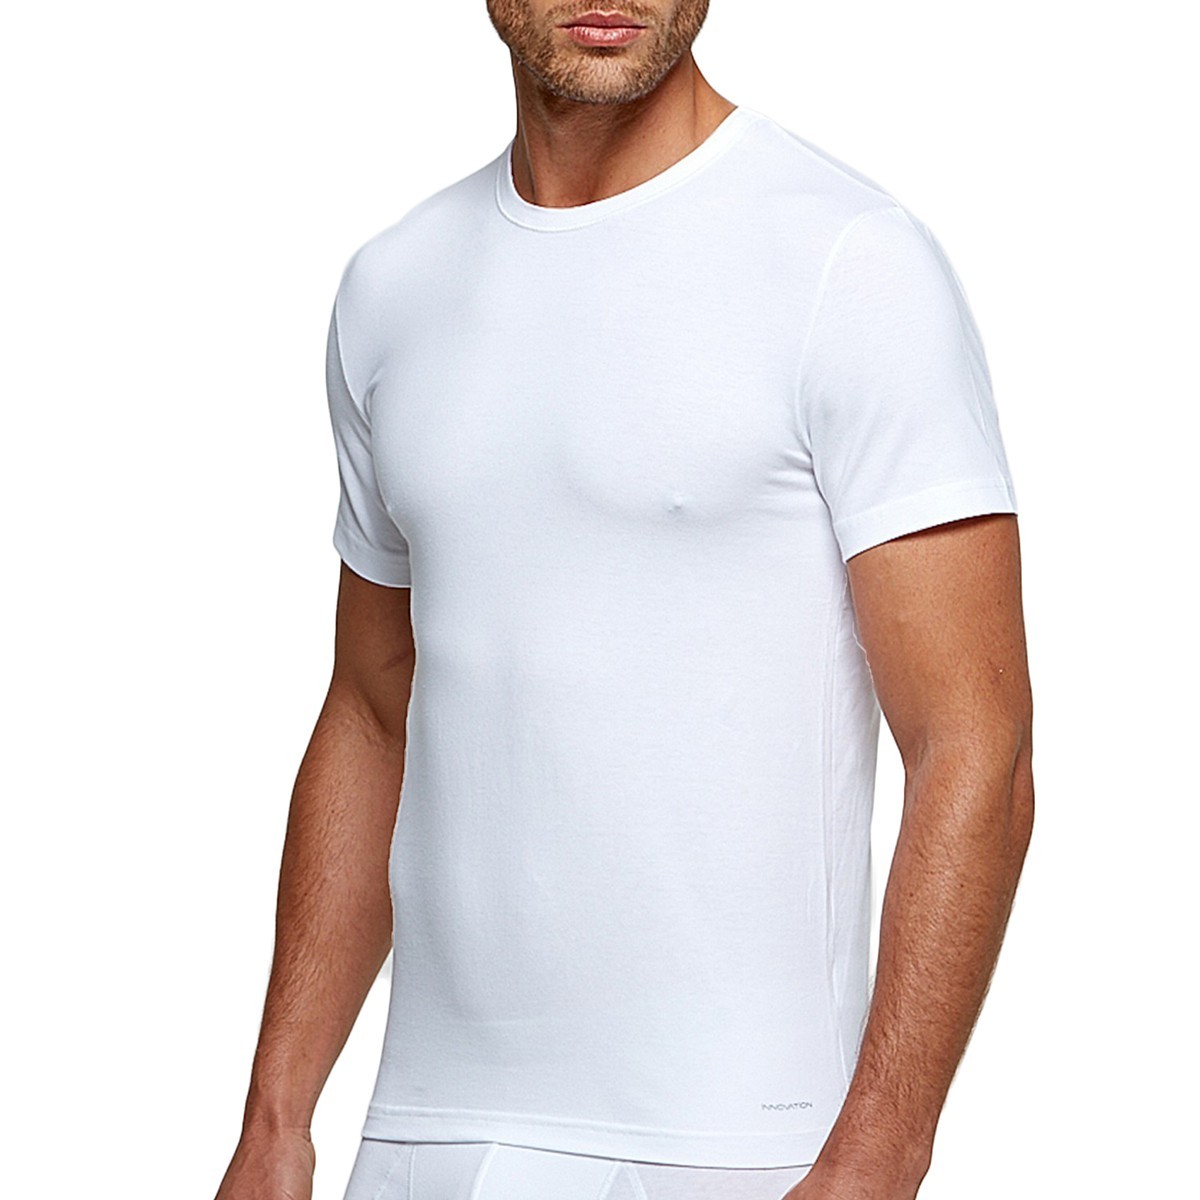 T-shirt blanc tricot de peau homme régulateur de température